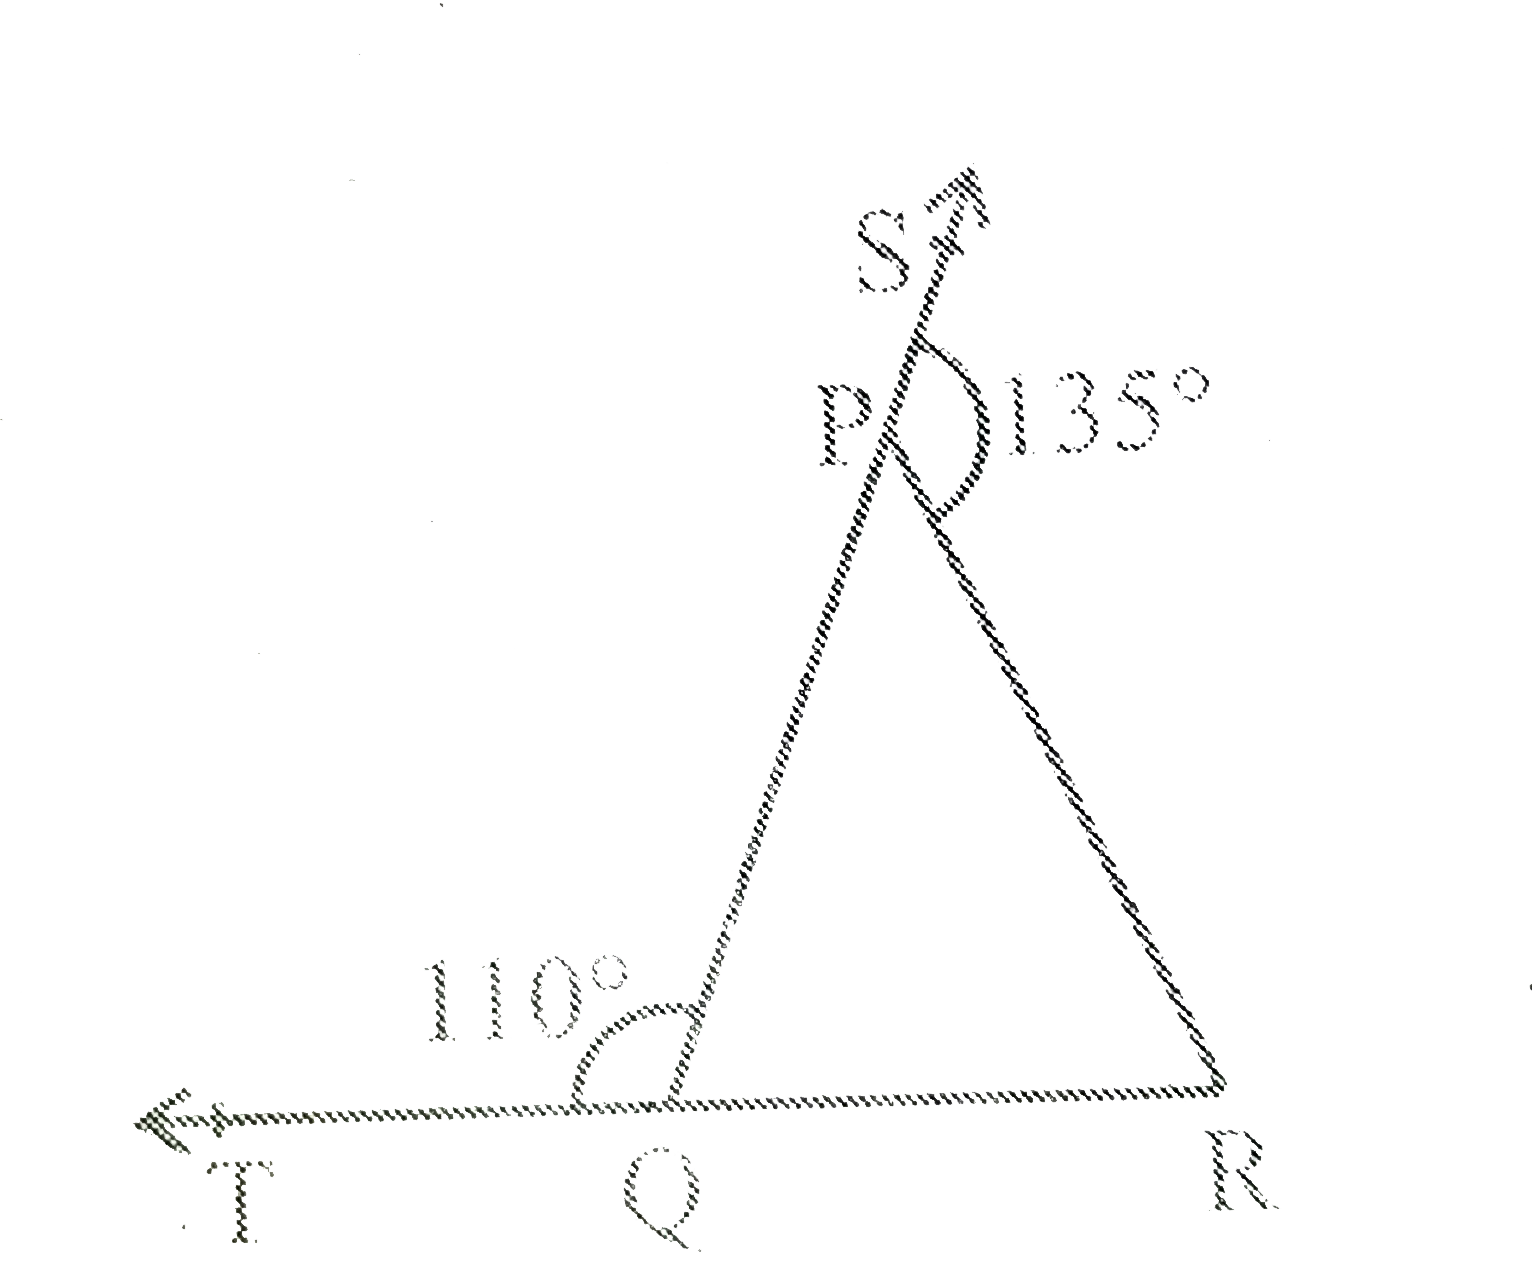 आकृति 6.39  में Delta PQR की भुजाओं QP  और RQ  क्रमश : बिंदुओं S और T  तक बढ़ाया गया है । यदि angle SPR=135^(@) है और angle PQT=110^(@) है, तो angle PQR ज्ञात कीजिये ।